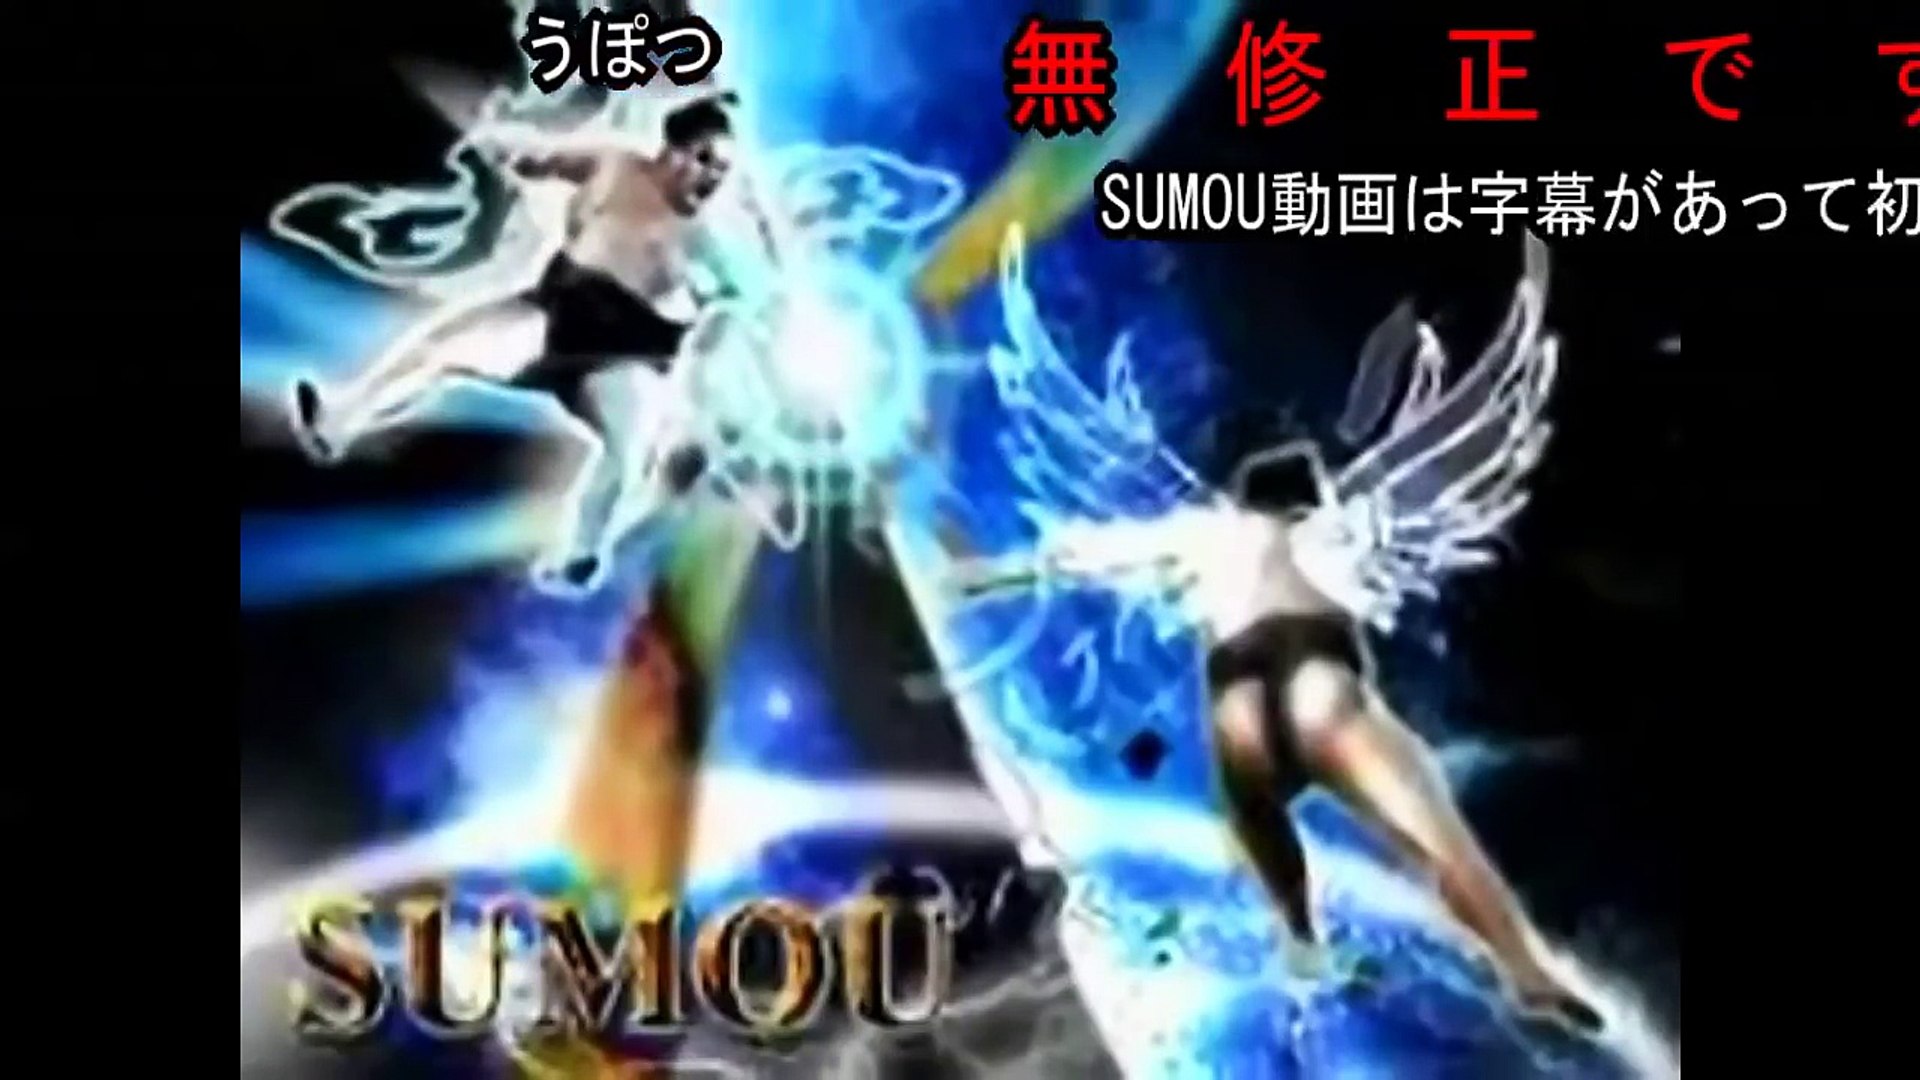 米付き 世界最強の国技 Sumou 高画質 高コメント 60fps ニコニコ動画 Video Dailymotion